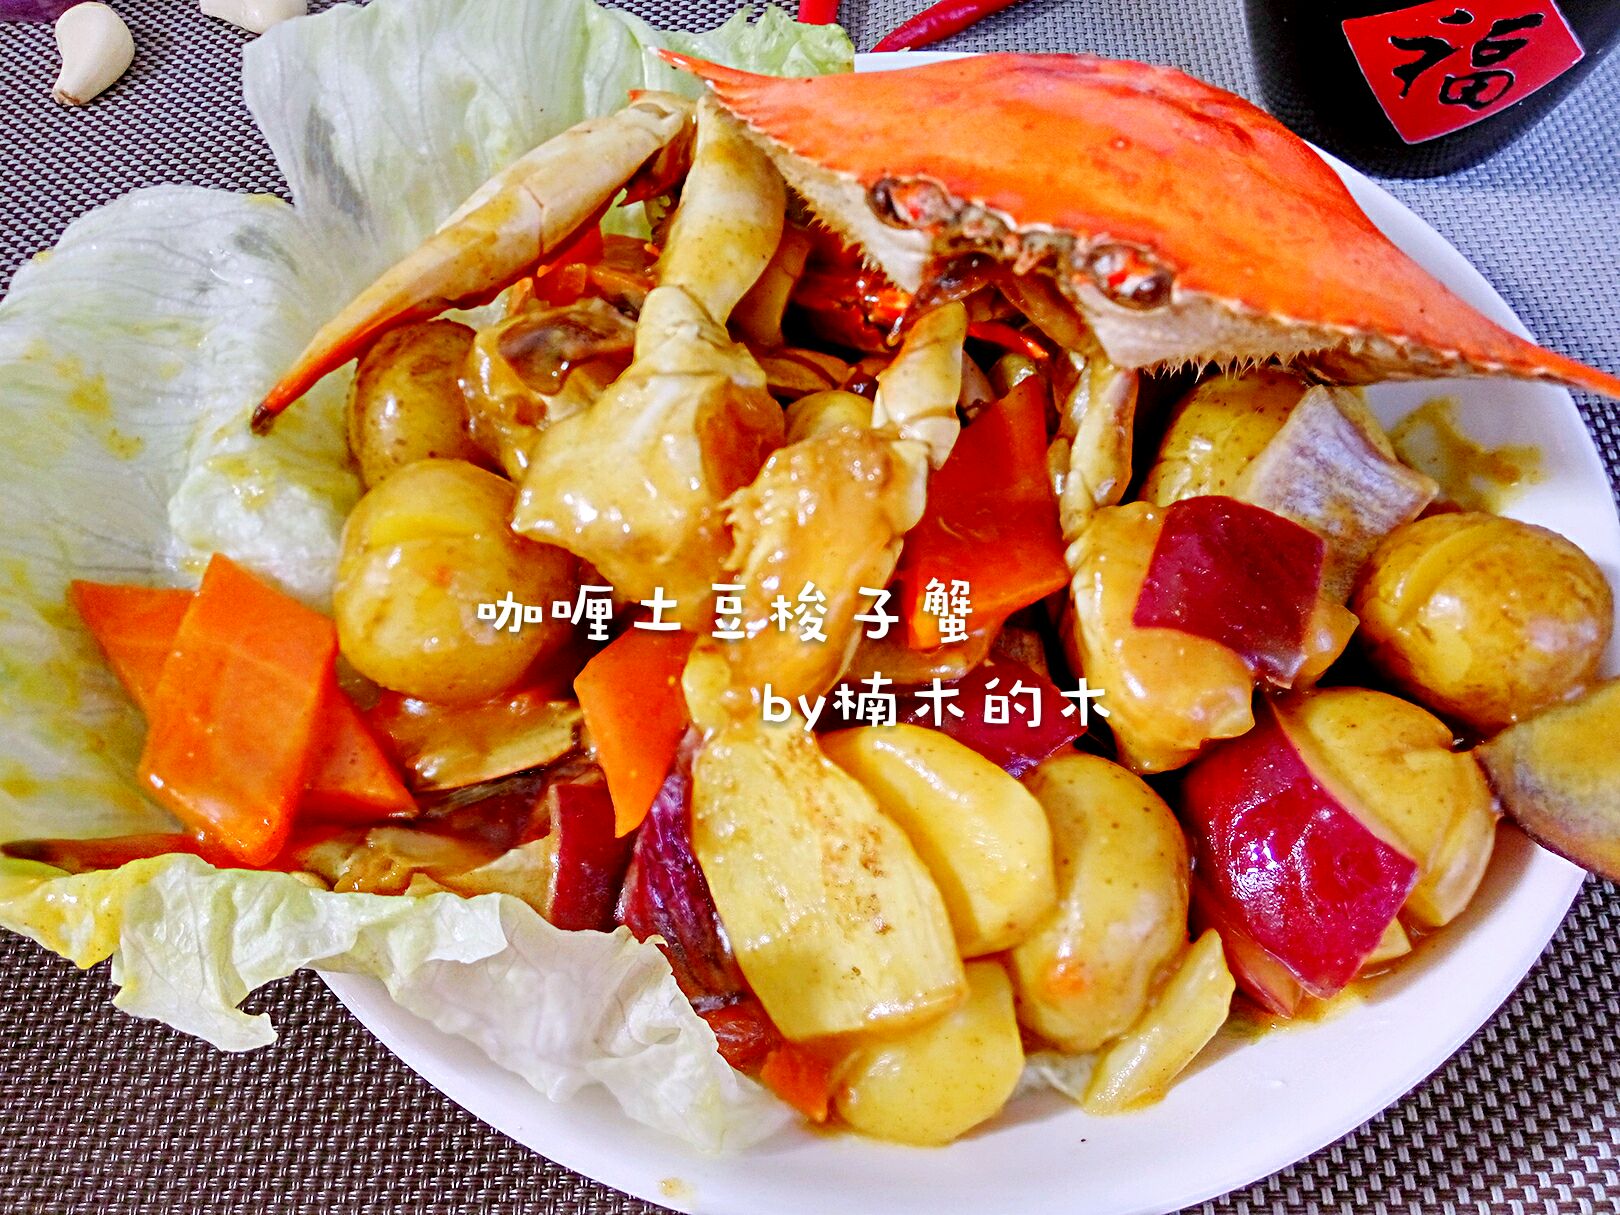 咖喱土豆烩梭子蟹#奇妙咖喱，拯救萌娃食欲